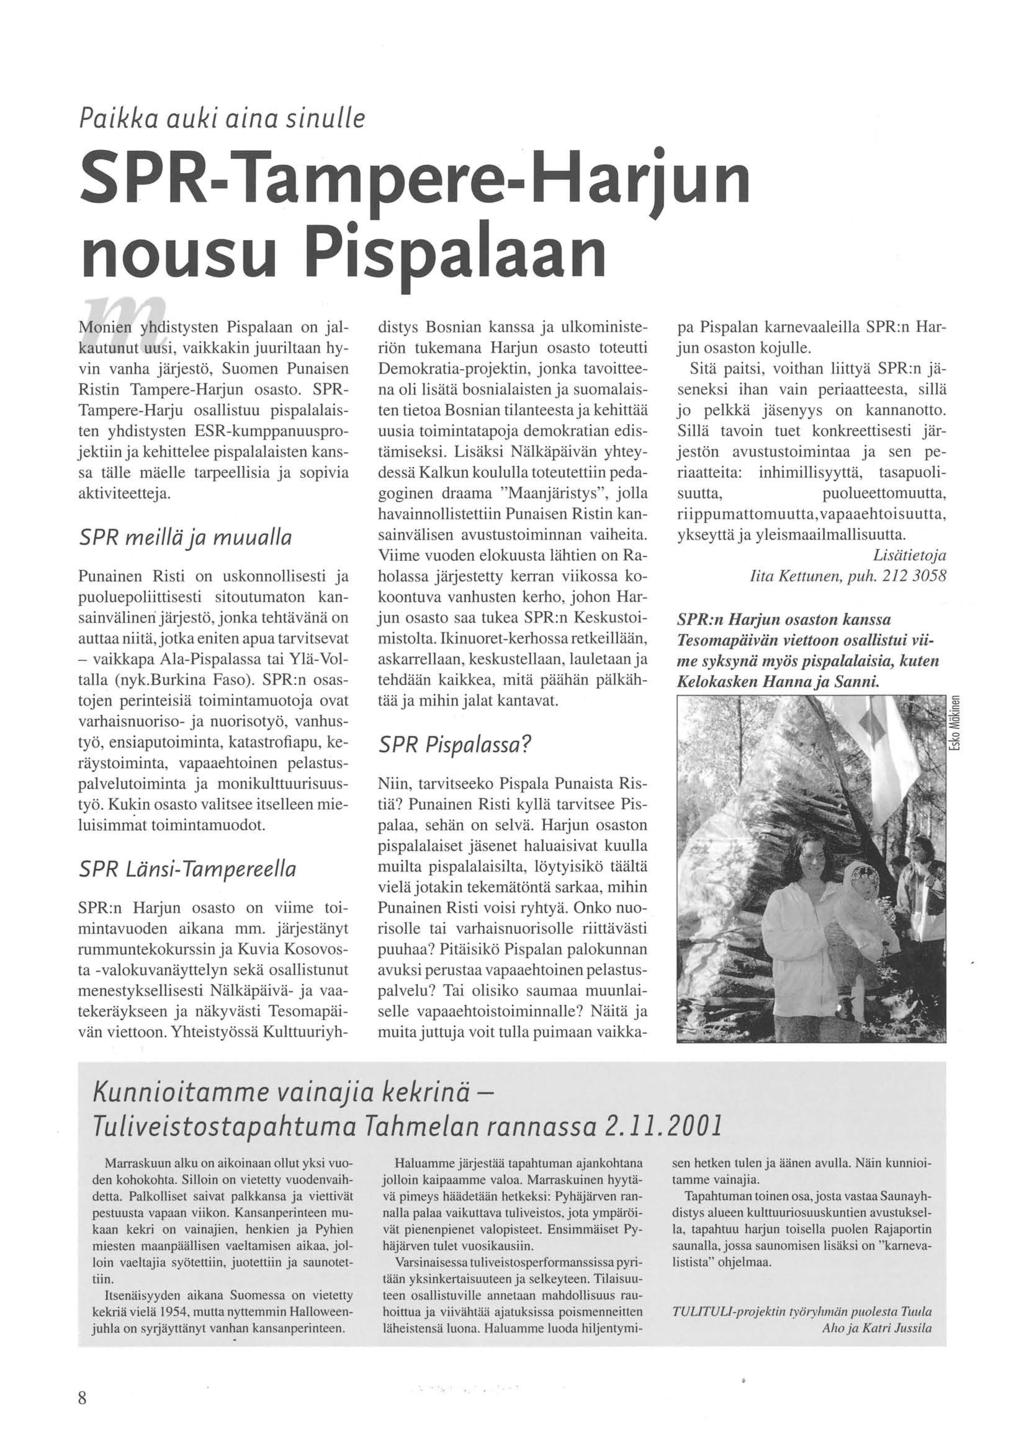 Paikka auki aina sinulle SPR-Tampere-Harjun nousu Pispalaan Monien yhdistysten Pispalaan on jalkautunut uusi, vaikkakin juuriltaan hyvin vanha järjestö, Suomen Punaisen Ristin Tampere-Harjun osasto.